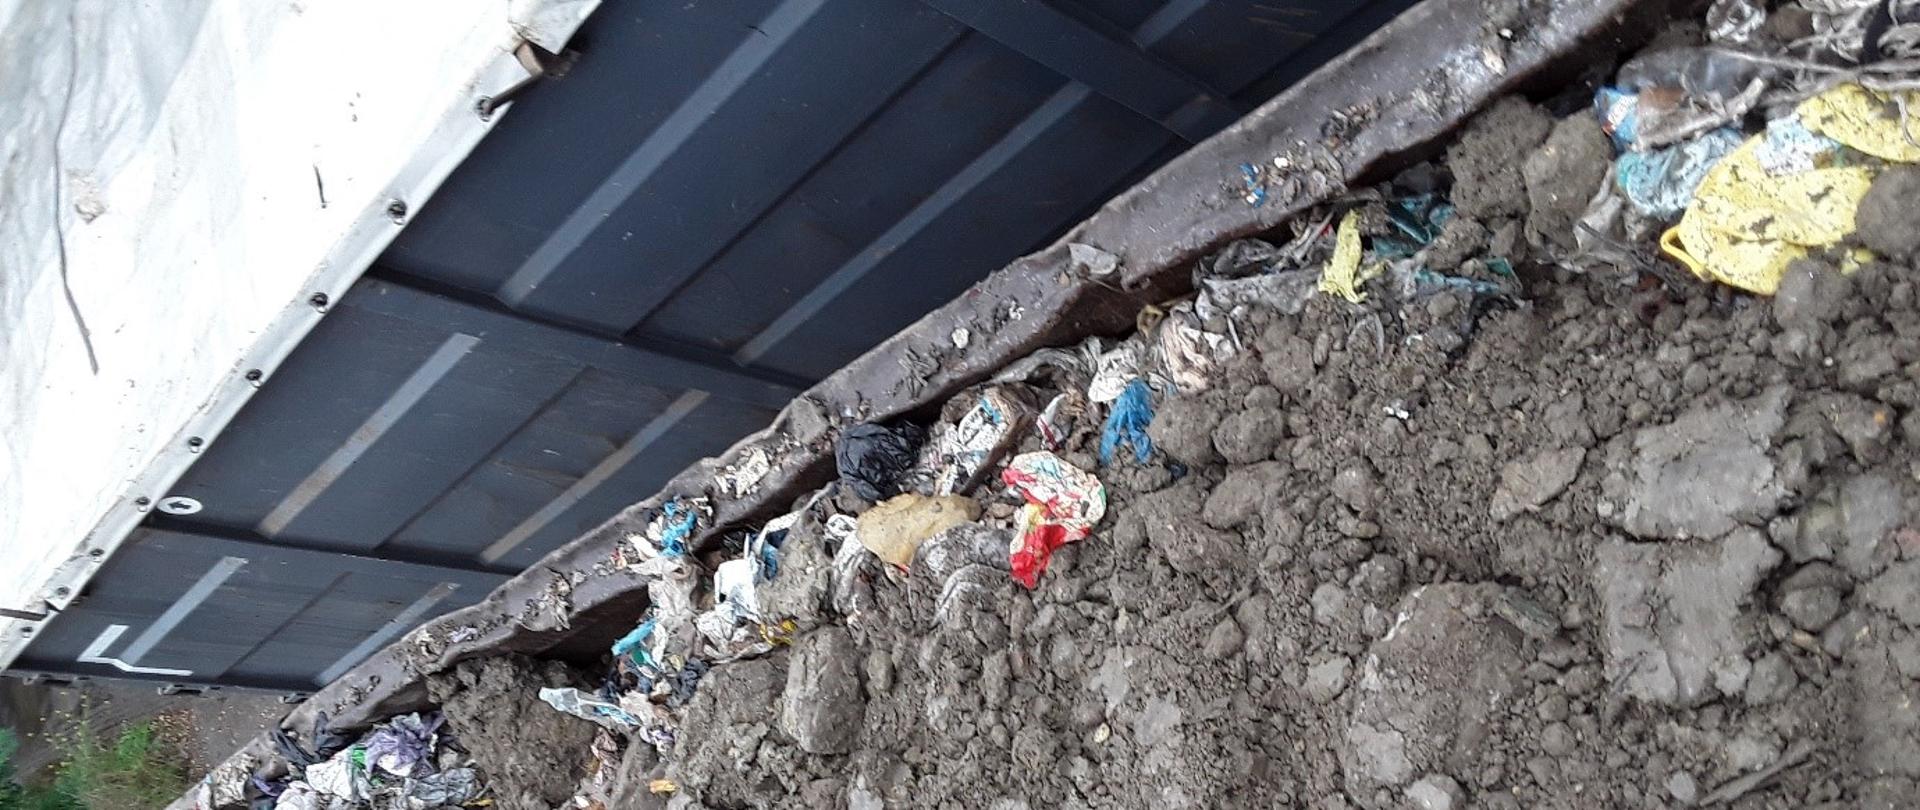 Wygląd składowiska o którym mowa w tekście, pod warstwą ziemi znajdują się odpady komunalne które przedsiębiorcy chcieli ukryć.